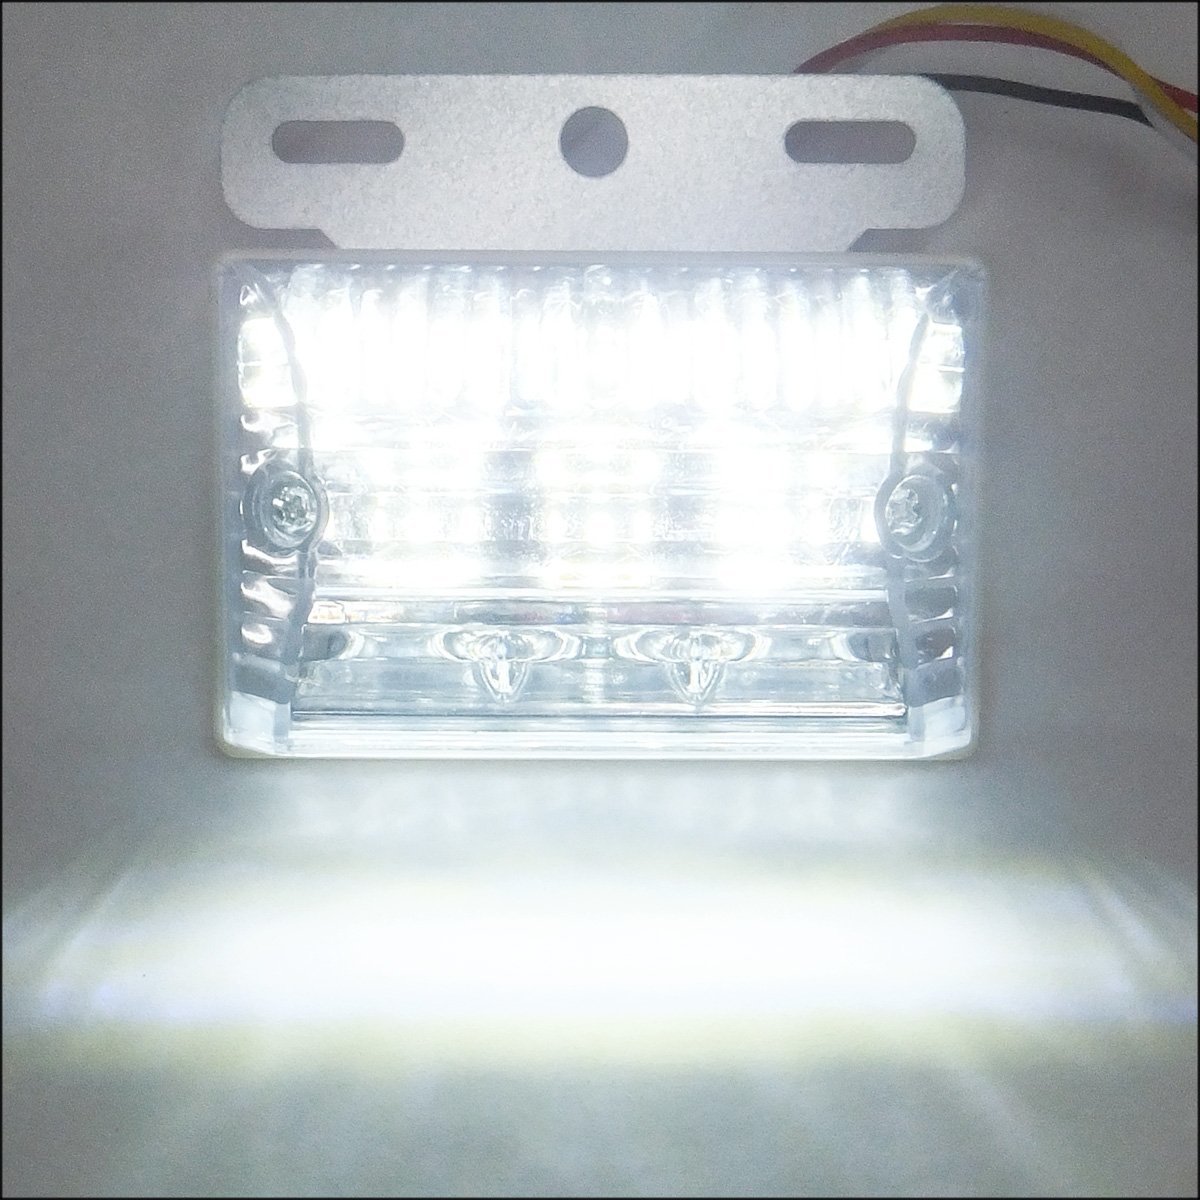 LEDサイドマーカー 4個組 24V ダウンライト付 角型 マーカーランプ クリア ホワイト + ホワイト [2]/22ш_画像8